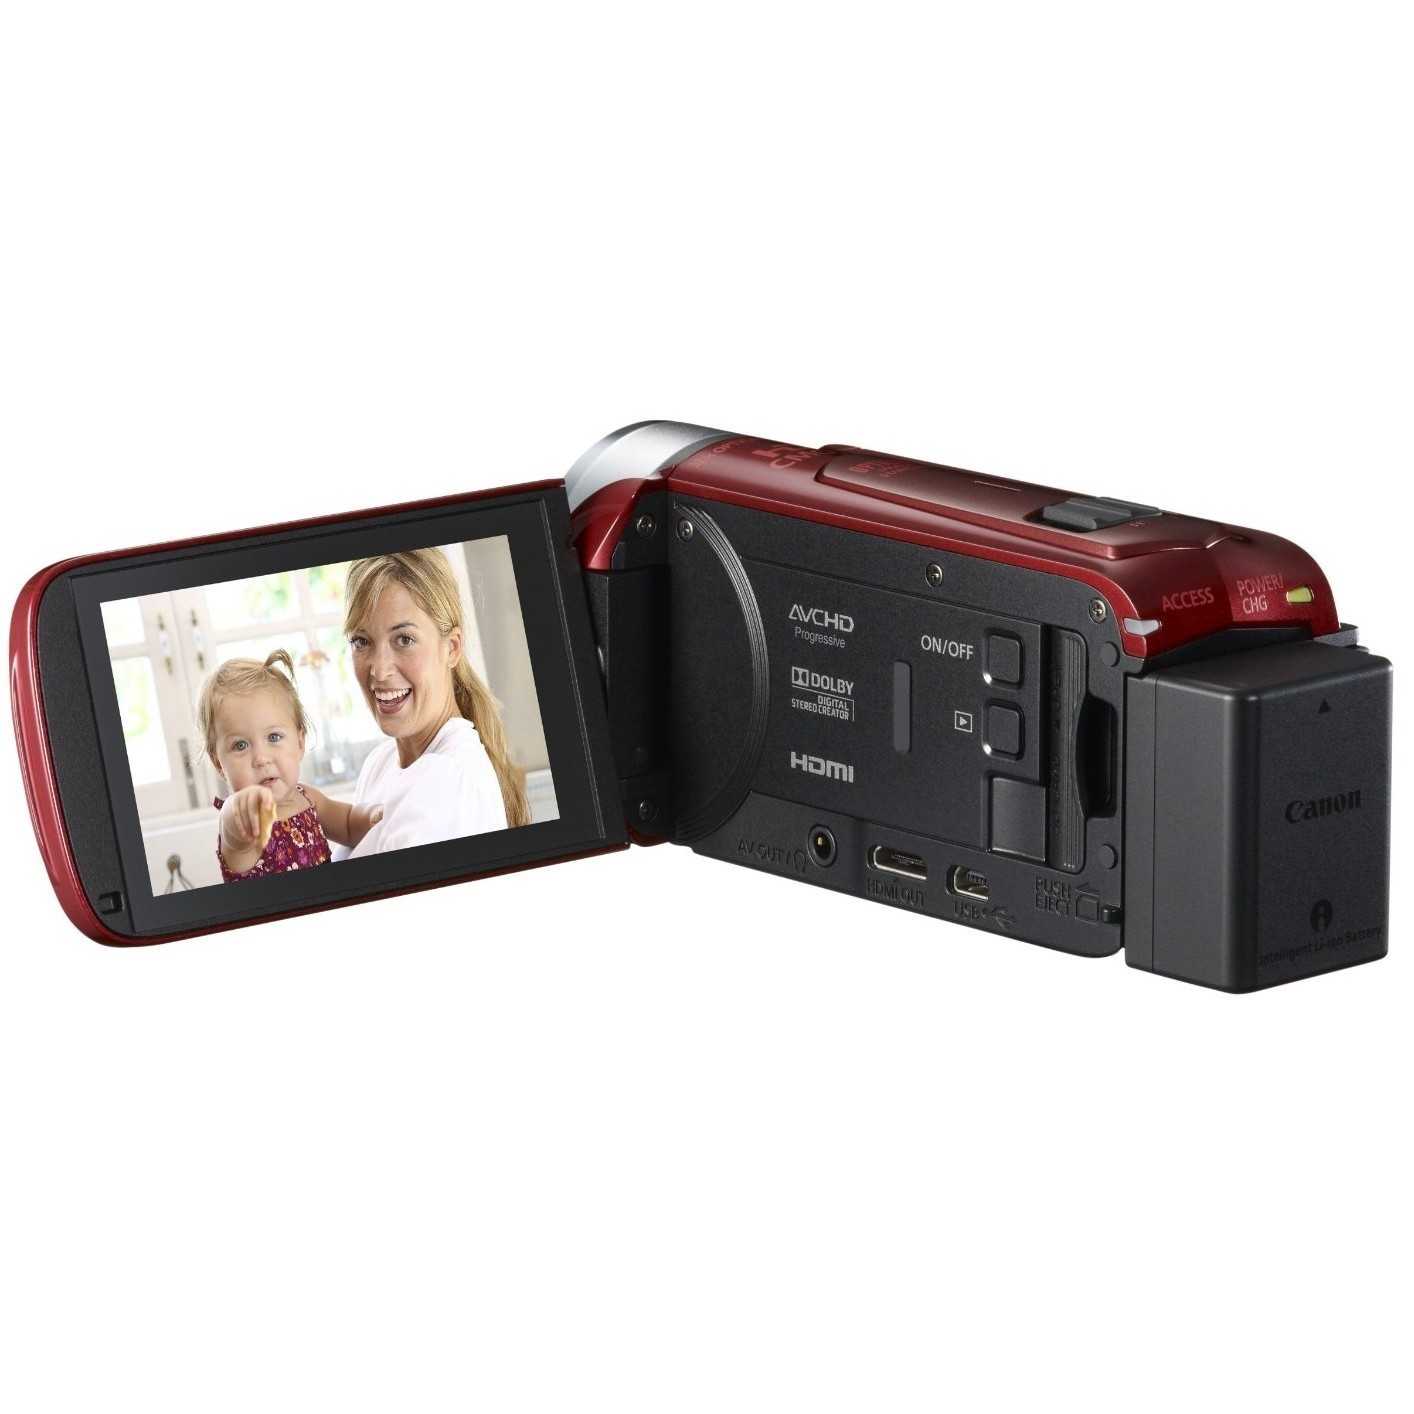 Canon legria hf g25 (черный) - купить , скидки, цена, отзывы, обзор, характеристики - видеокамеры